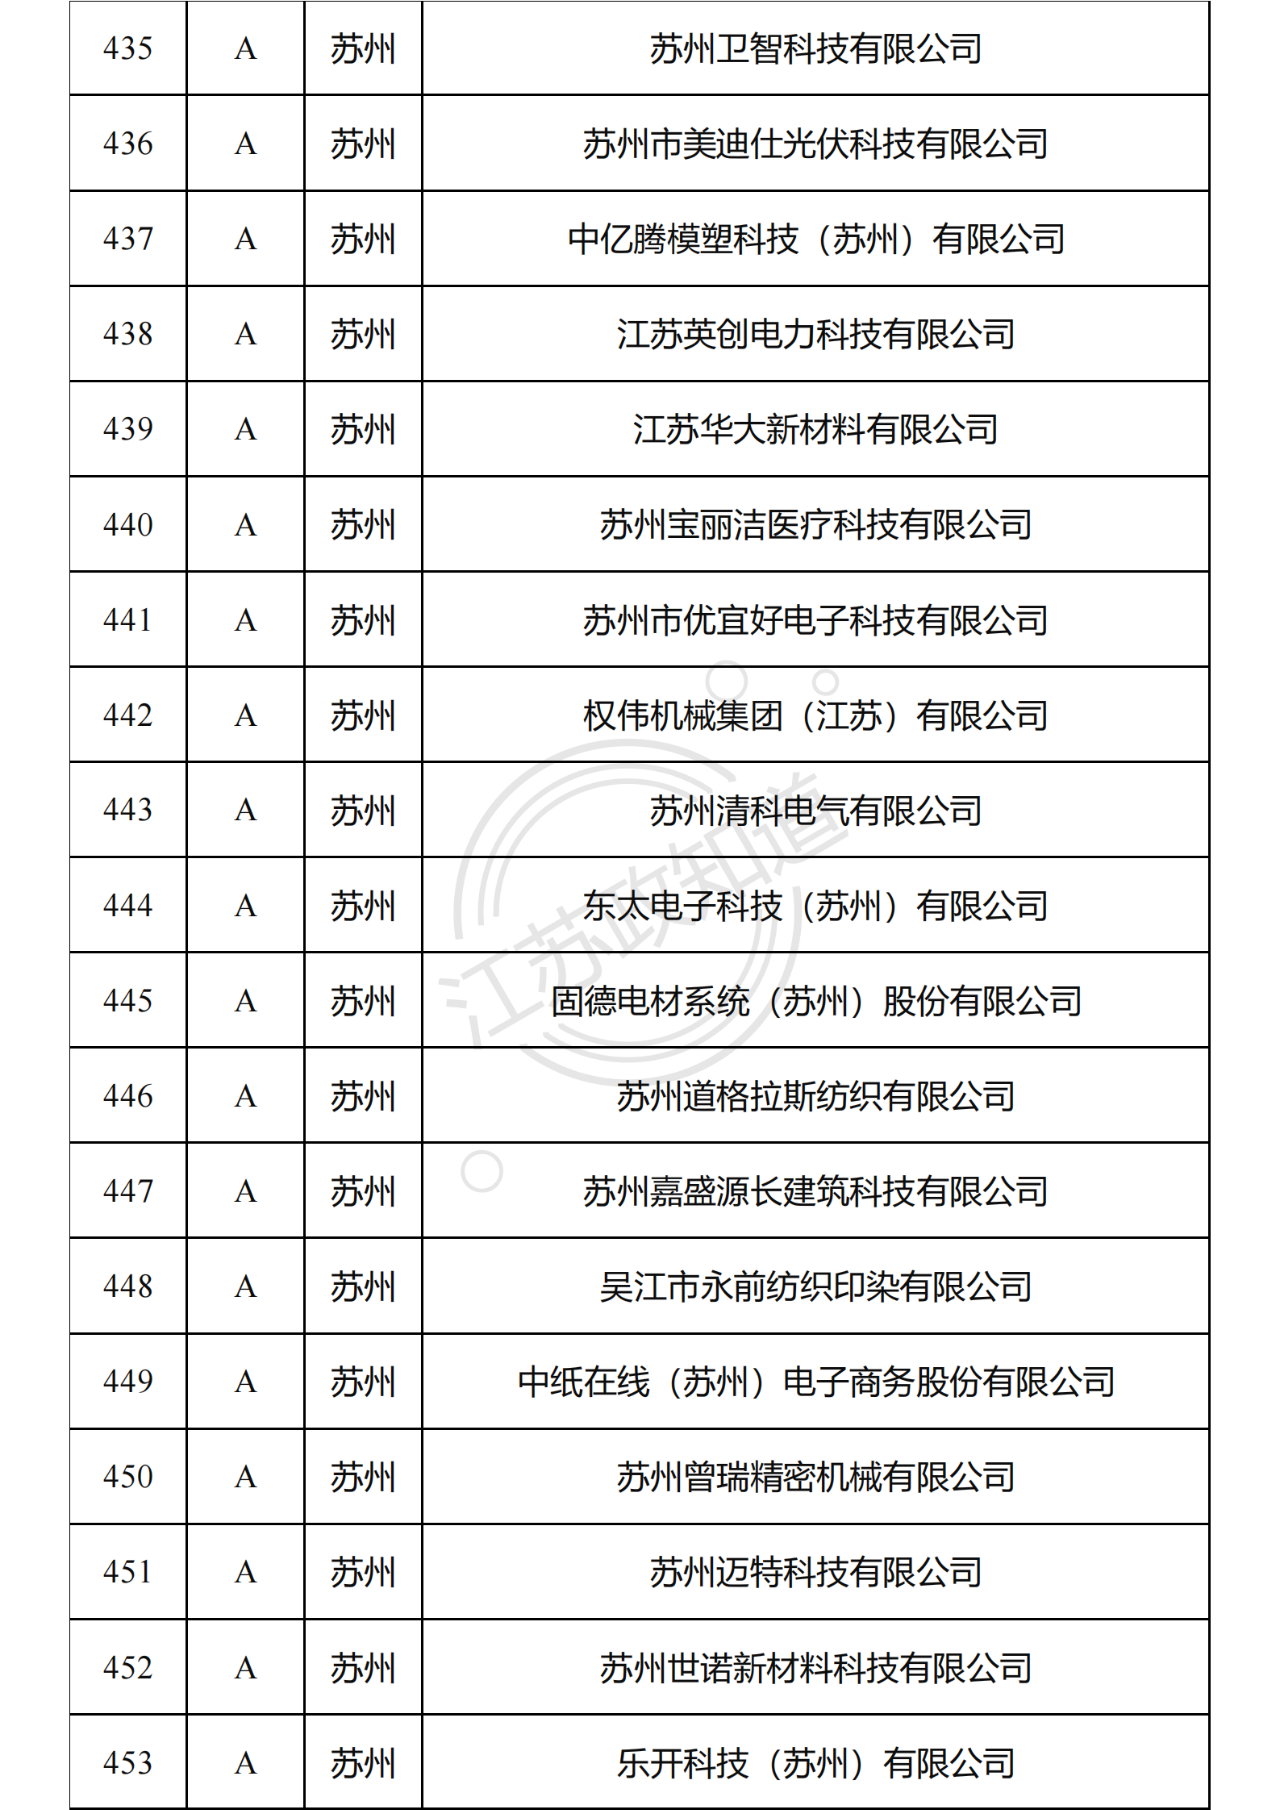 2022年度江苏省两化融合管理体系贯标试点企业培育对象拟认定名单25.png